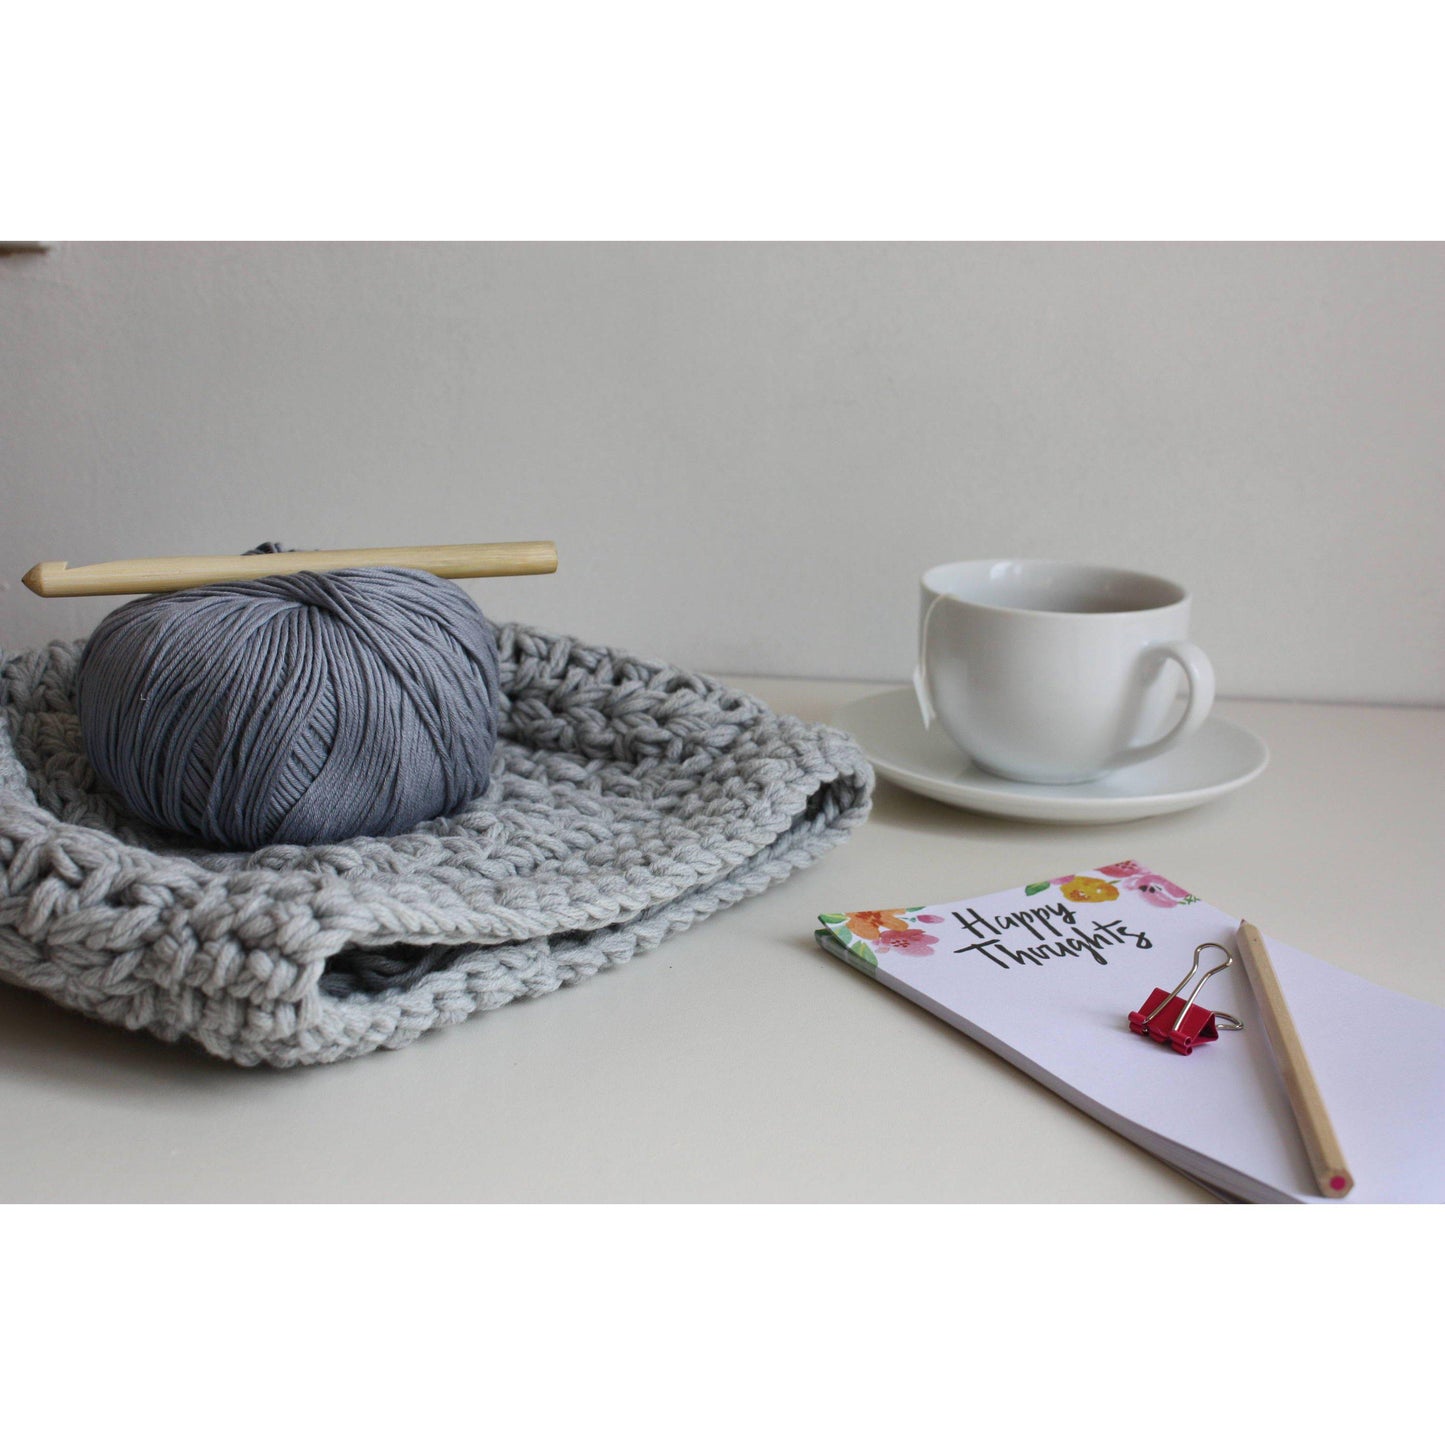 Easy Crochet Pattern - Womens Crochet Slouchy Beanie - King & Eye